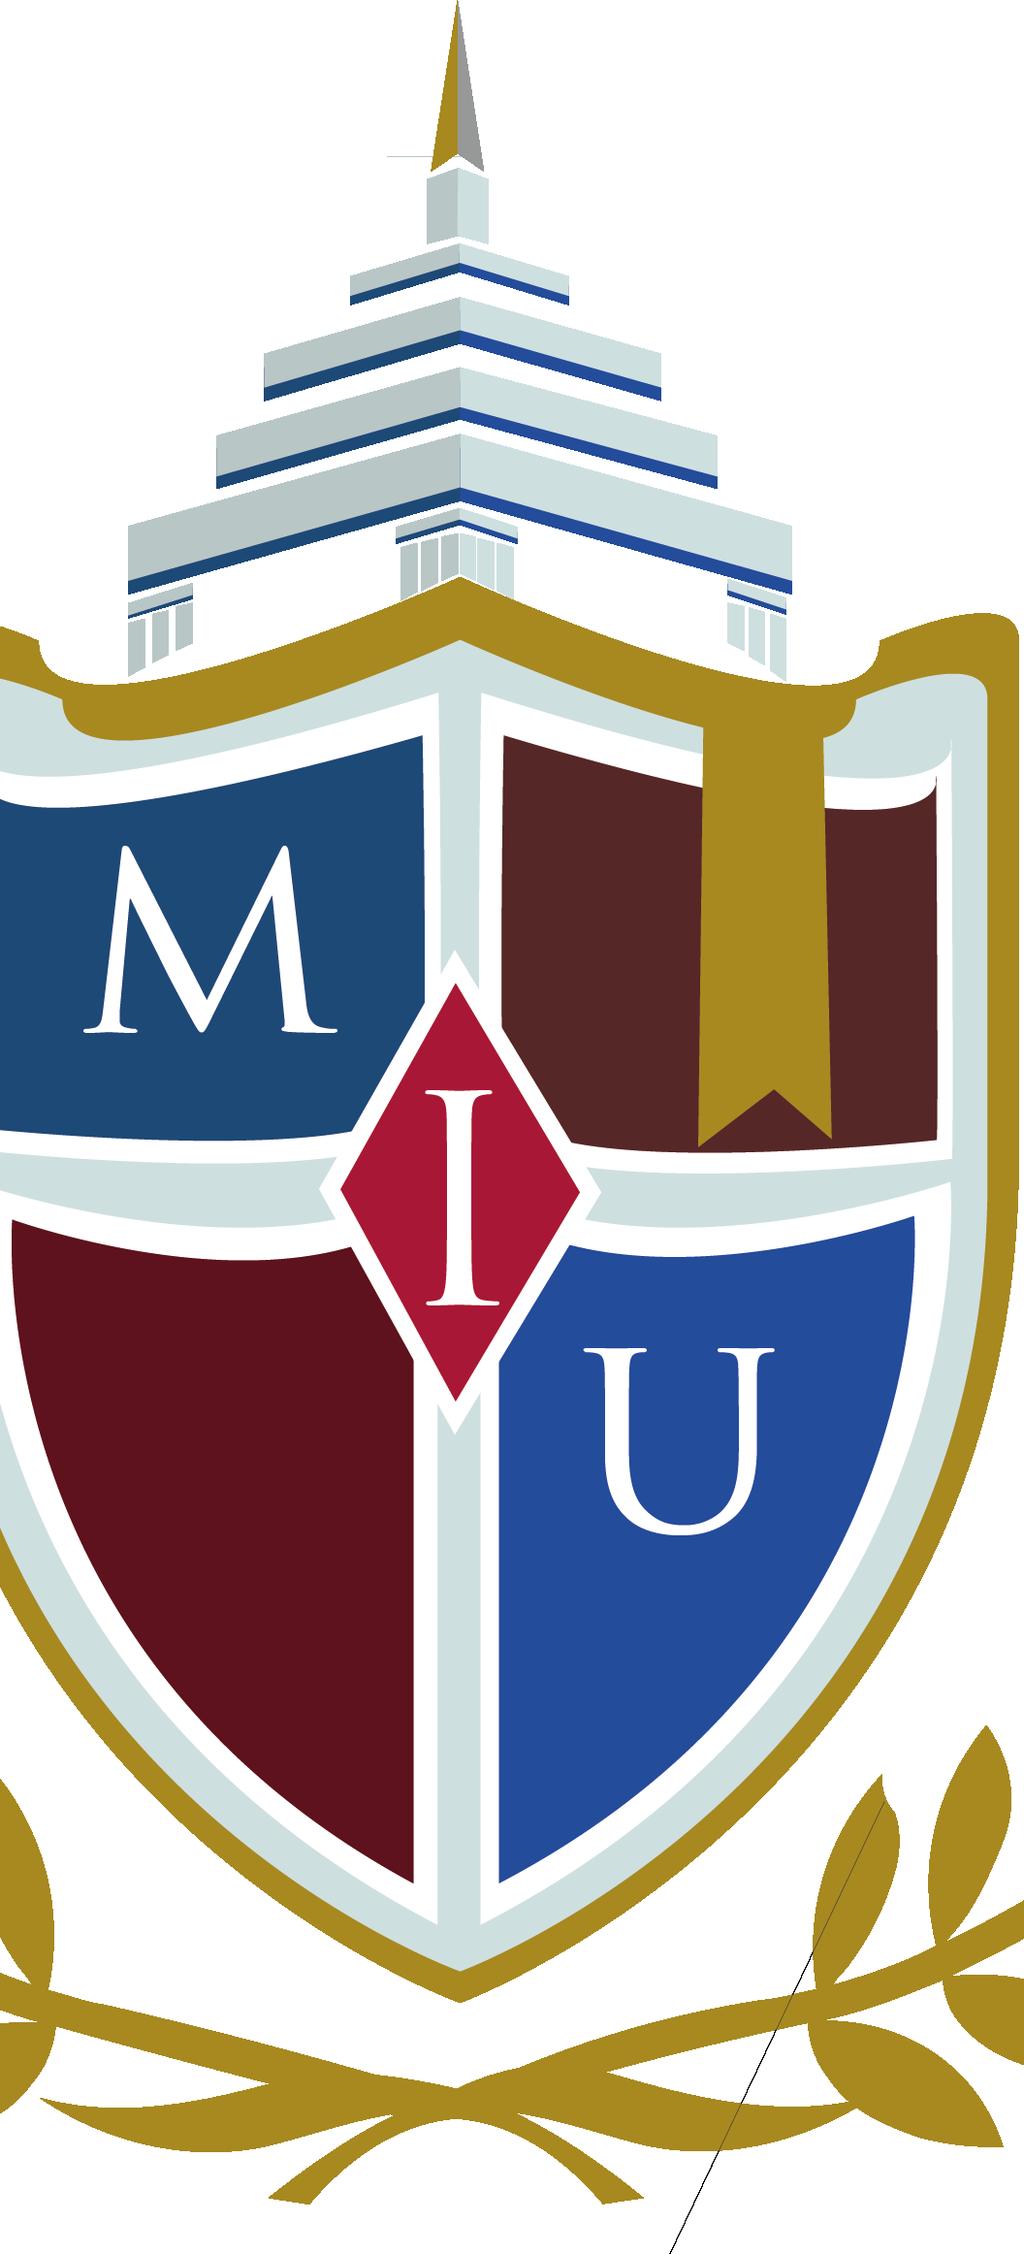 Mensaje del Rector Metropolitan International University (MIU) es una Universidad Norteamericana ubicada en el Estado de la Florida y autorizada por la Comisión Independiente de Educación con